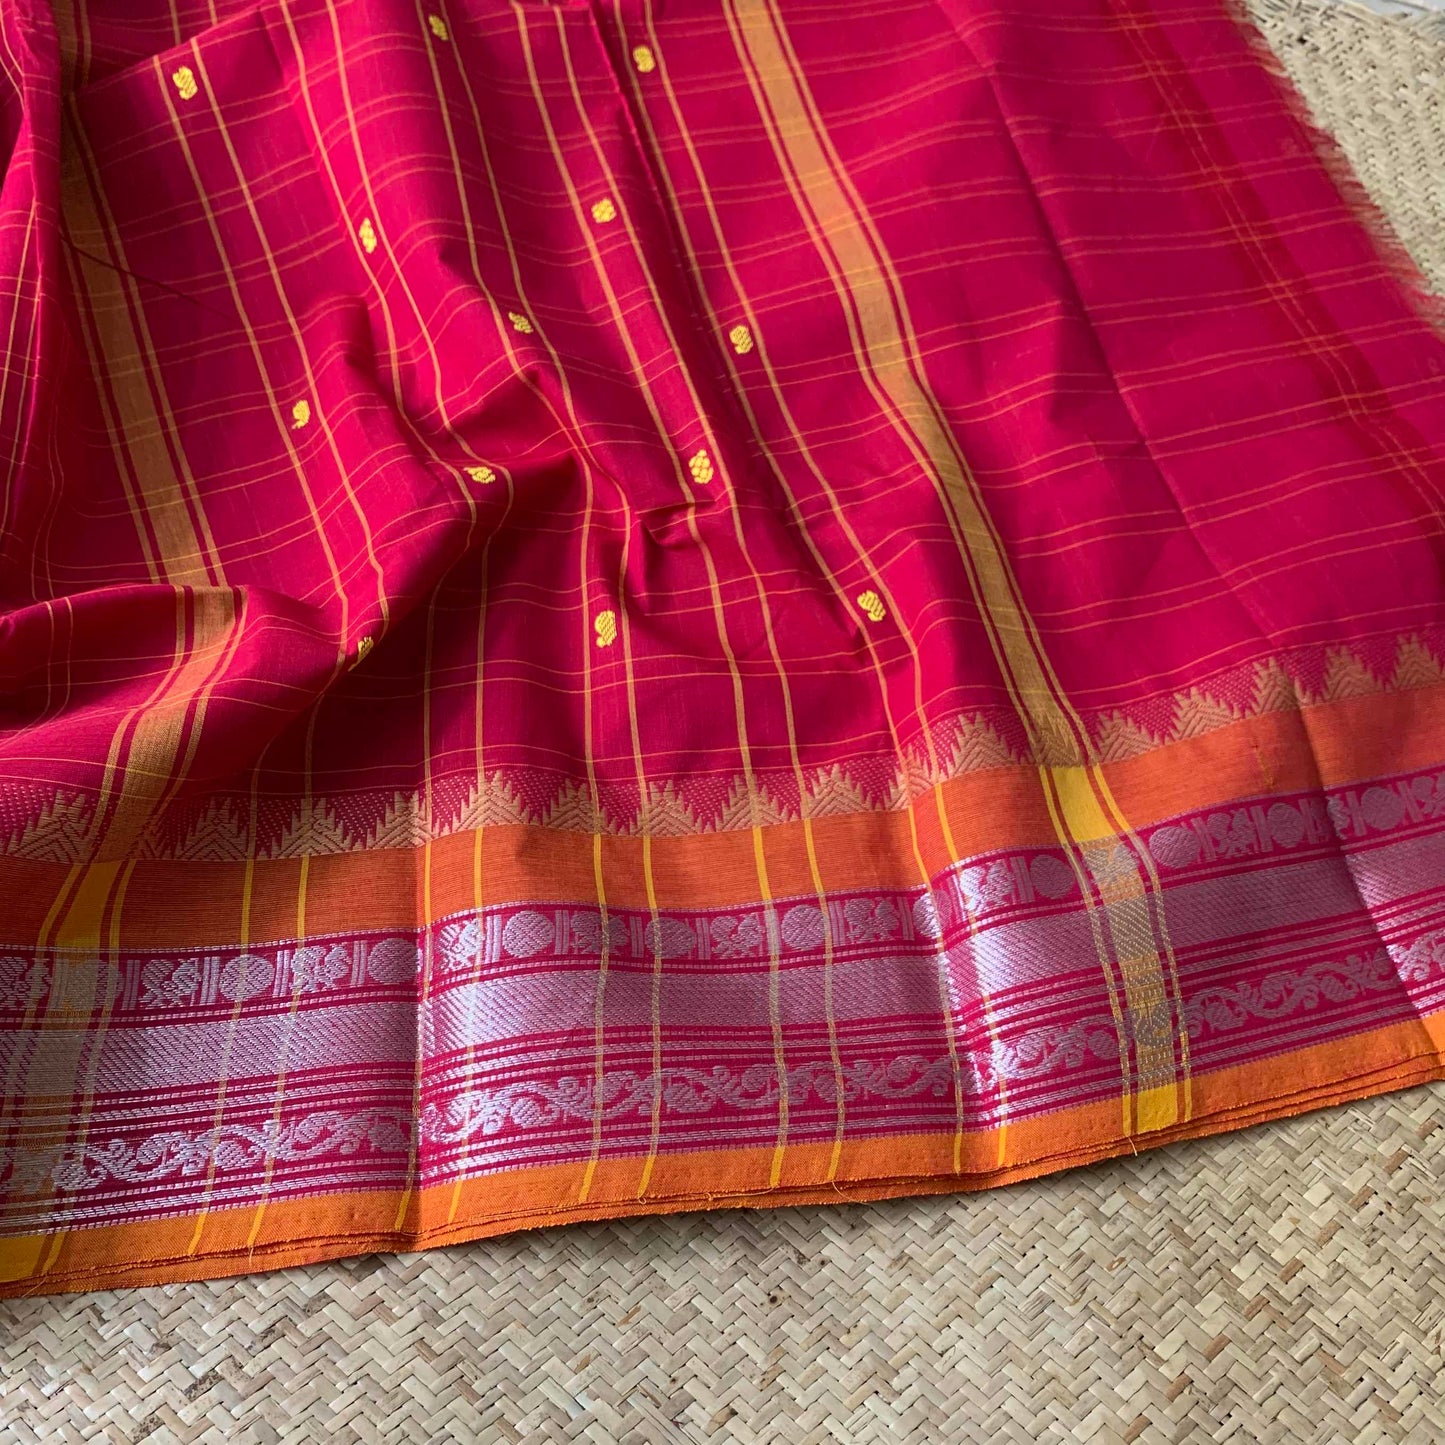 Chettinad Cotton Saree, Pink Checked Saree with Orange Silver Zari Border